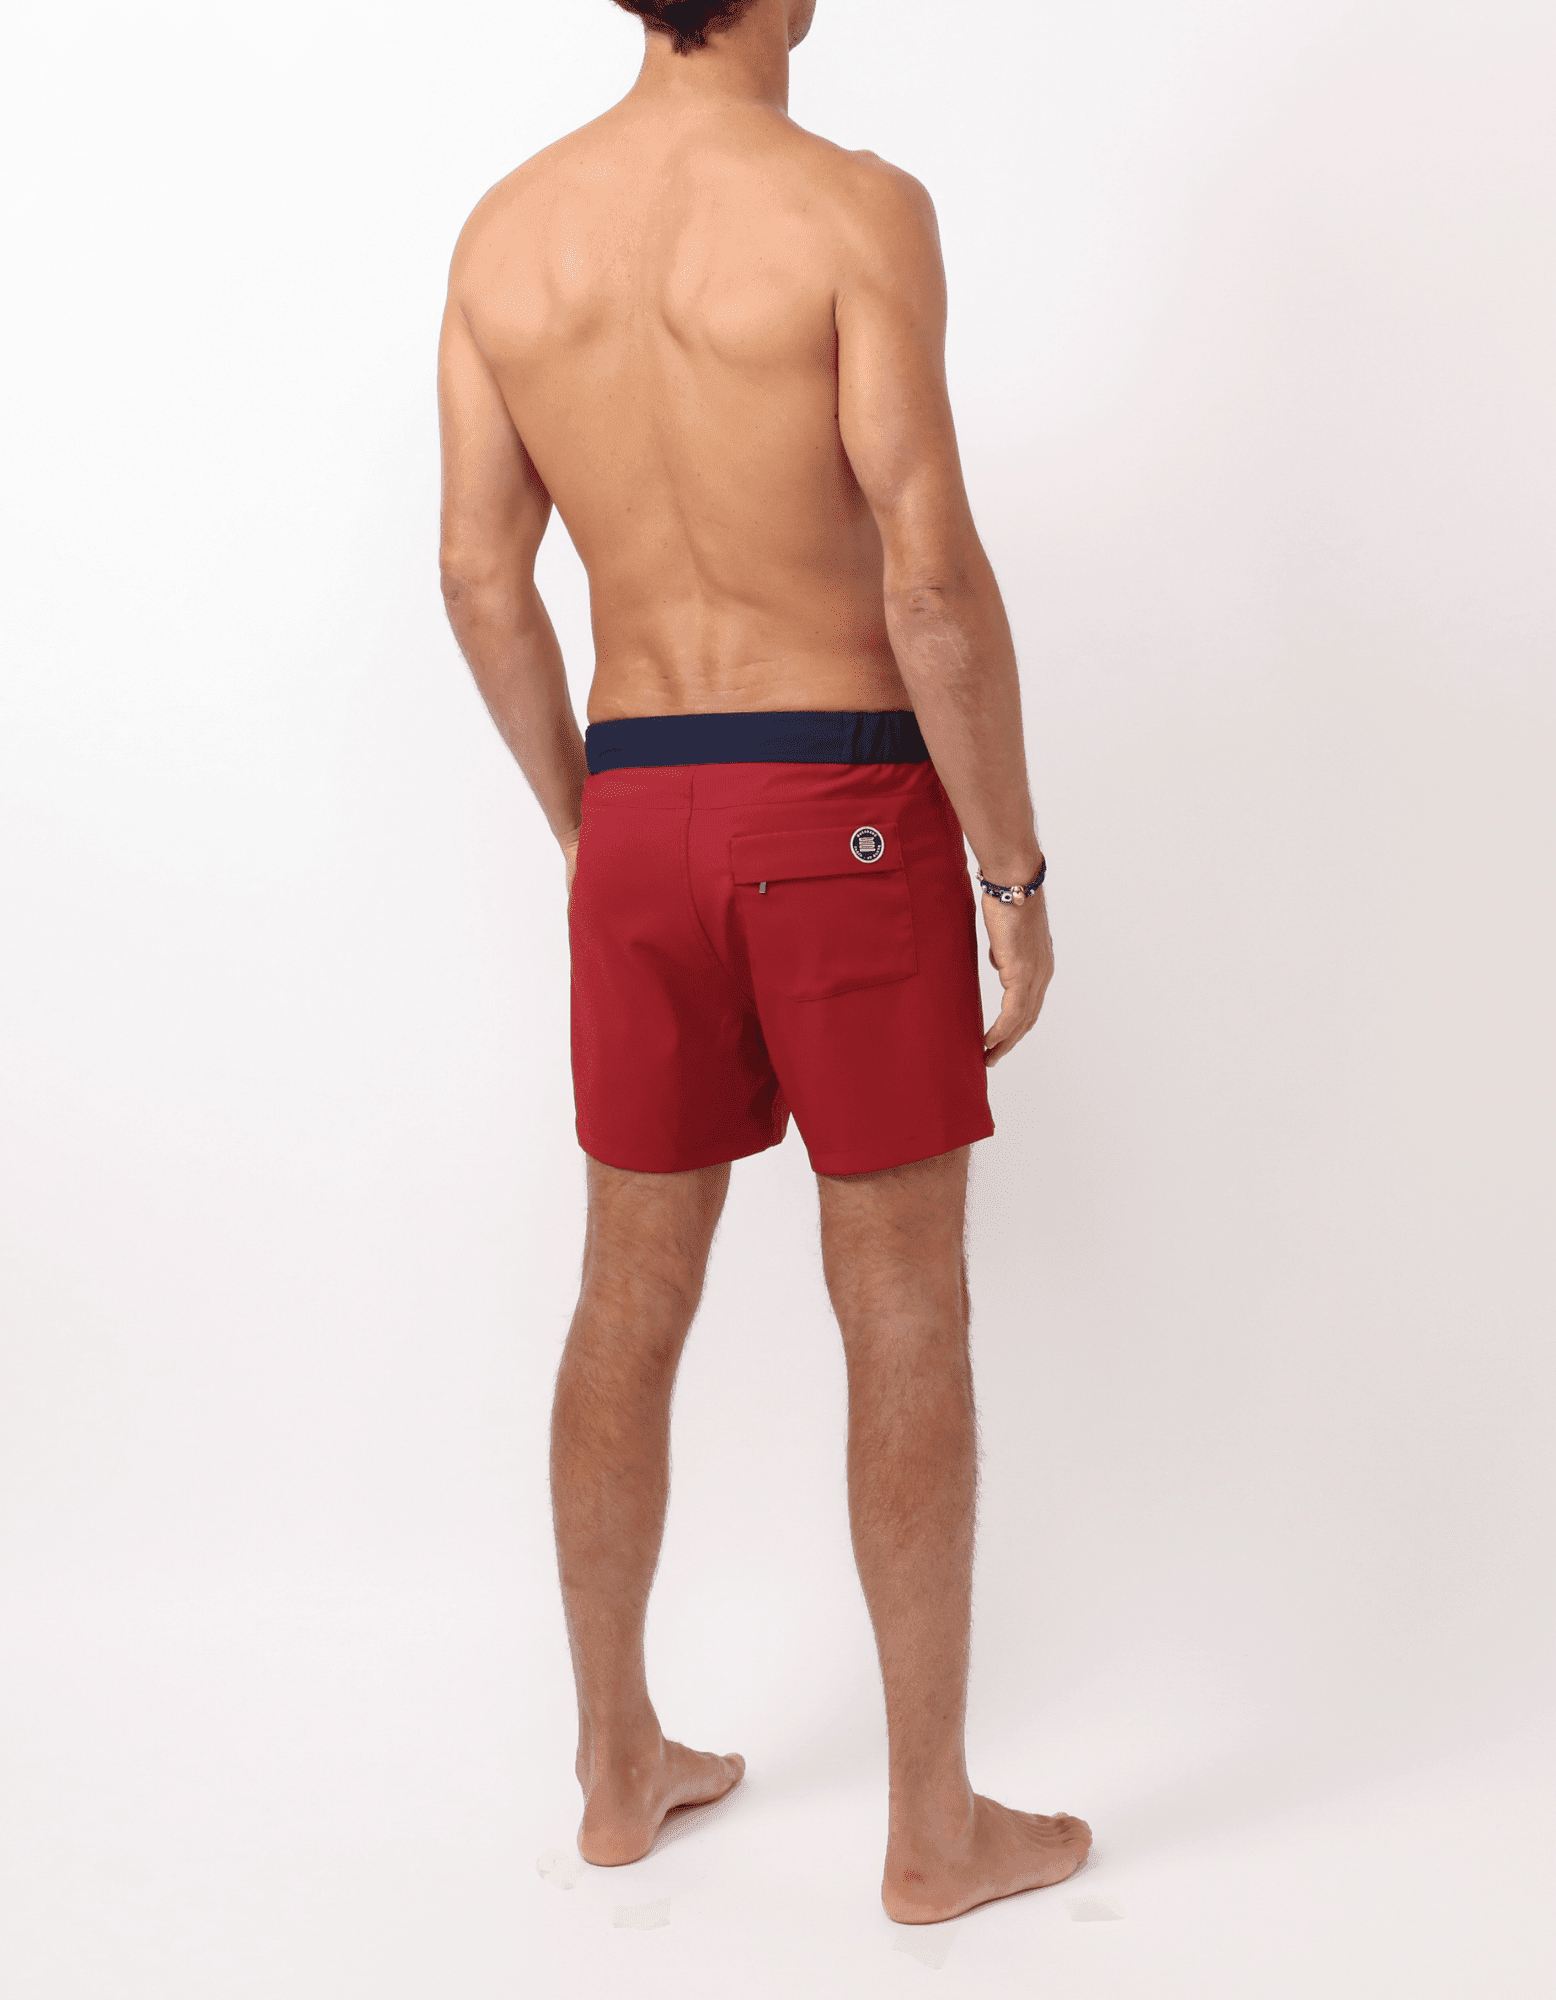 Gize - 01. Bordo & Navy Swim Shorts - Gize MACKEENE 